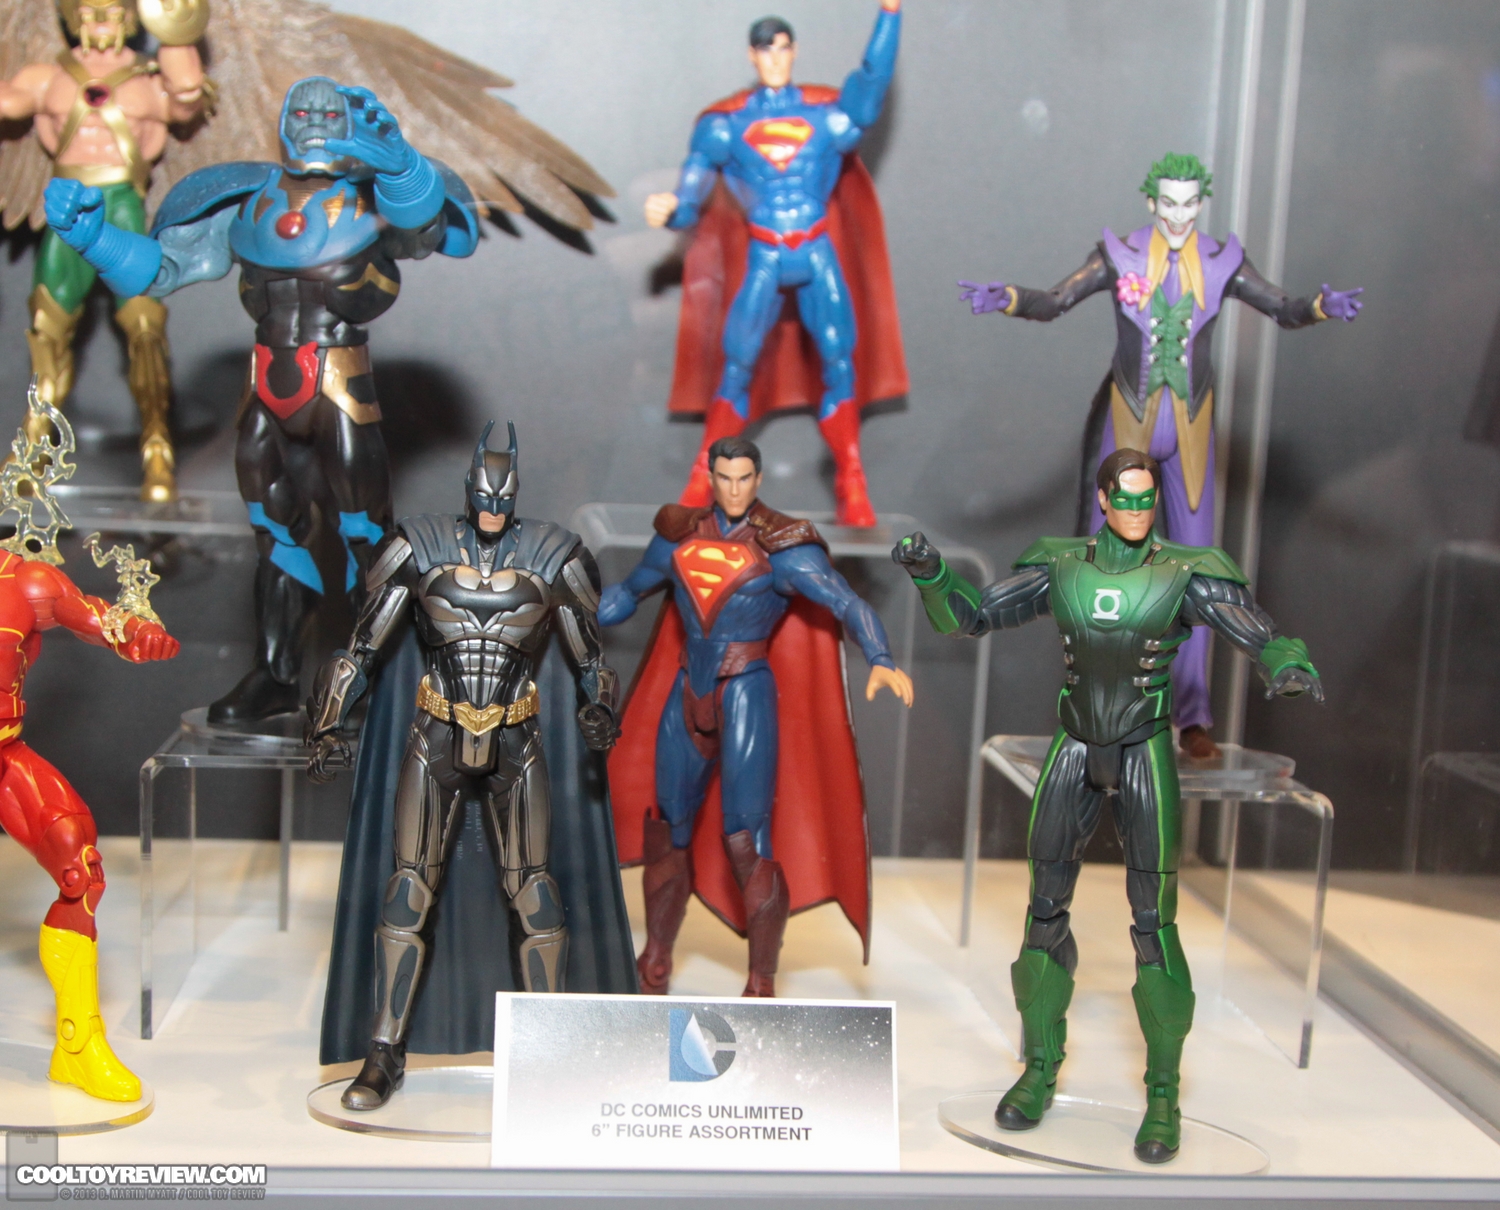 Mattel DC Unlimited Injustice: Gods Among Us Line